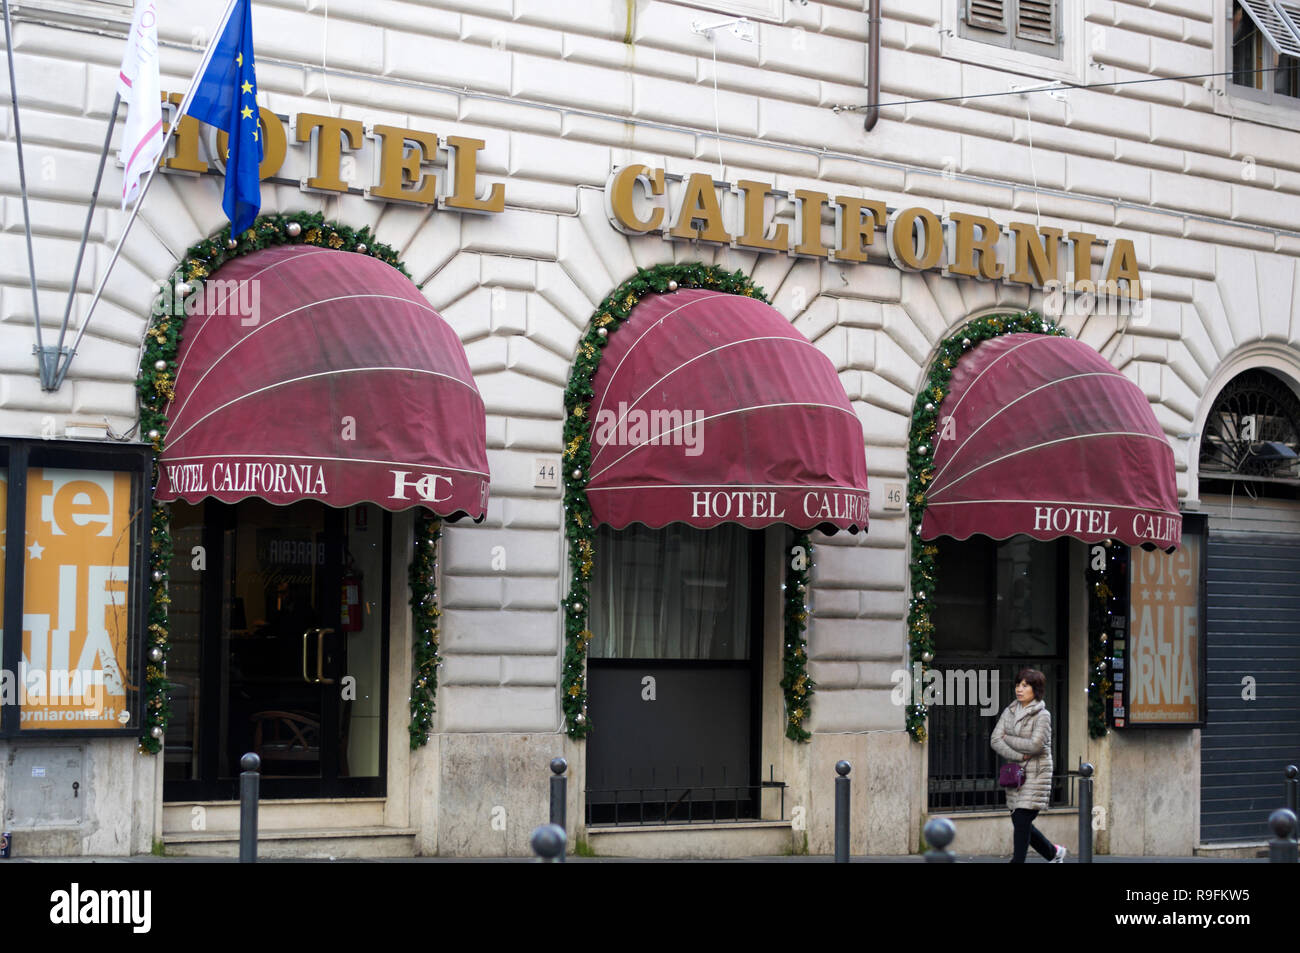 Hotel California, Rome, Lazio, Italy Stock Photo